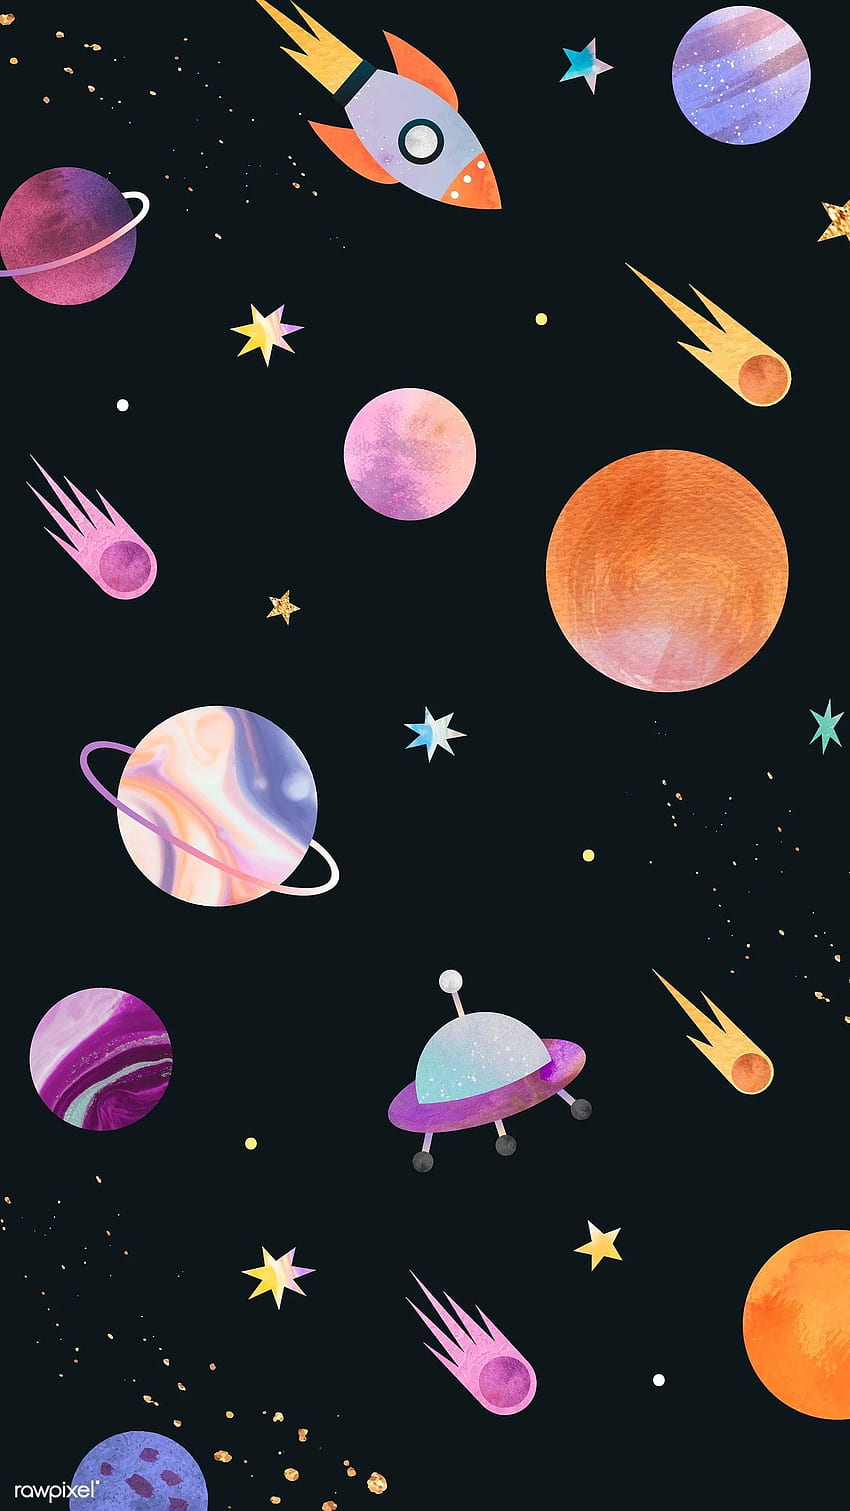 vetor premium do quadro de doodle em aquarela de galáxia colorida em 2020. Galáxia em aquarela, Galaxy, plano de fundo do iPhone, Doodle Space Papel de parede de celular HD